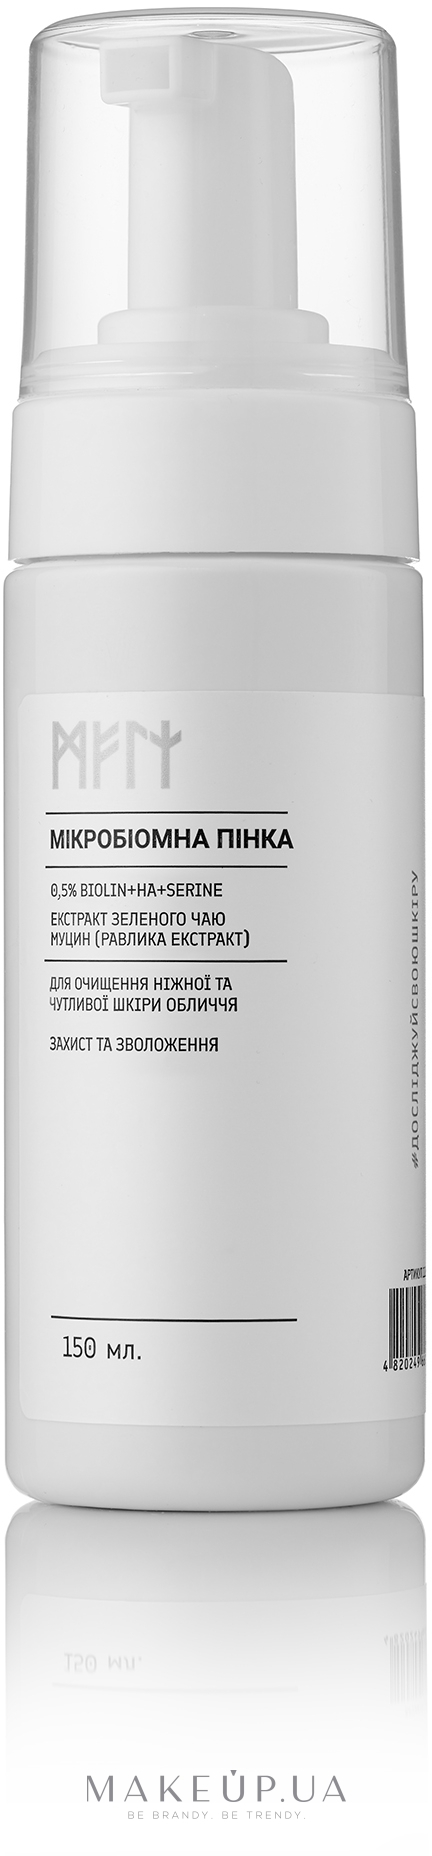 Микробиомная пенка для очищения нежной и чувствительной кожи лица - Meli 0,5% Biolin + HA + Serine — фото 150ml